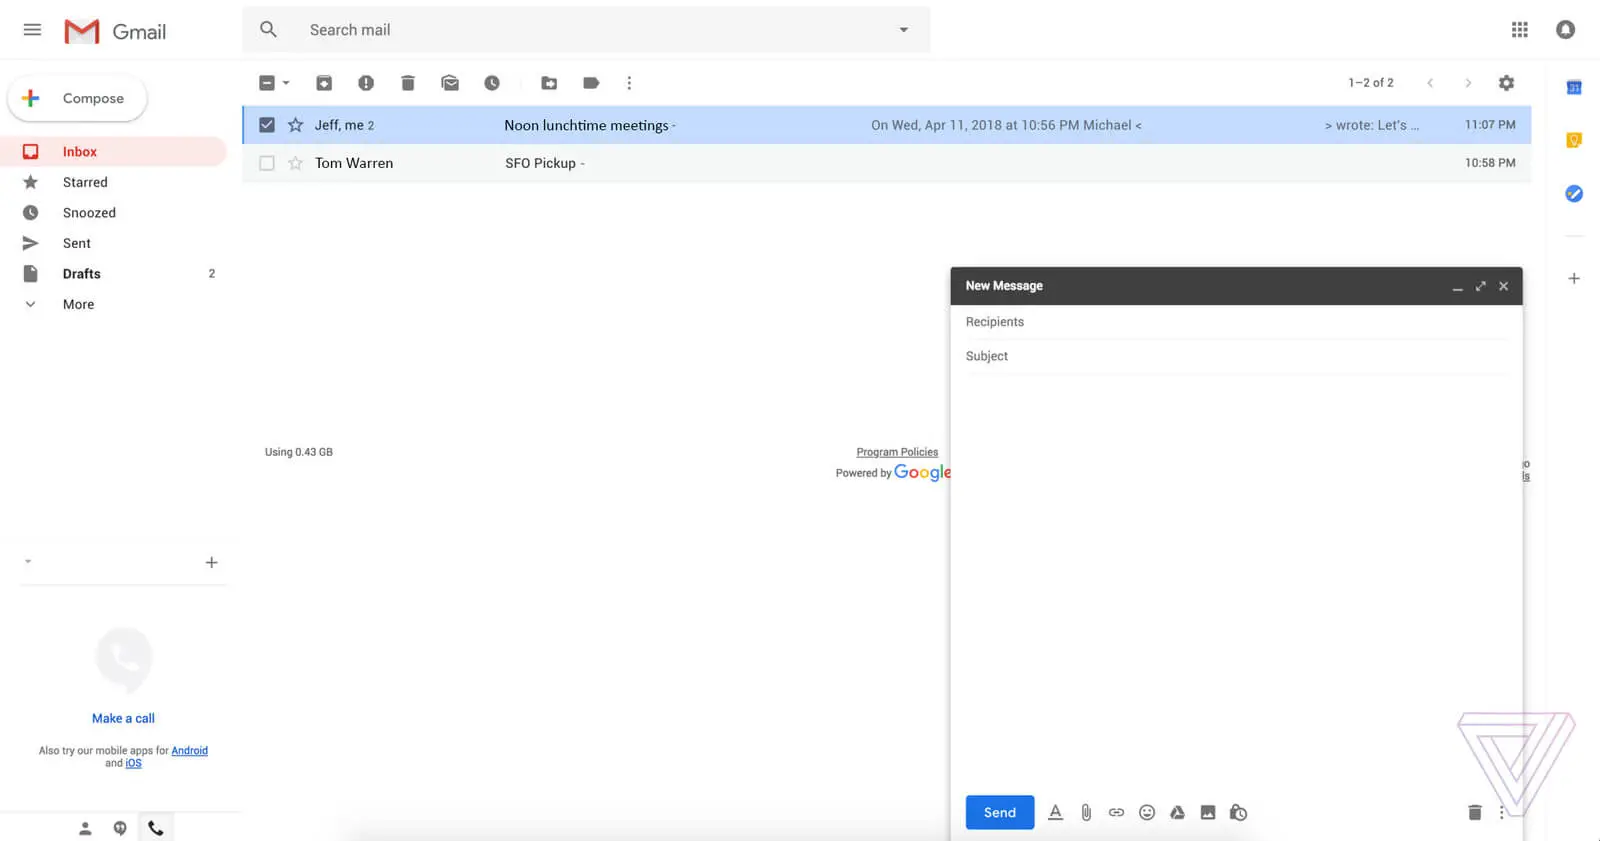 wersm-gmail-new-design-4